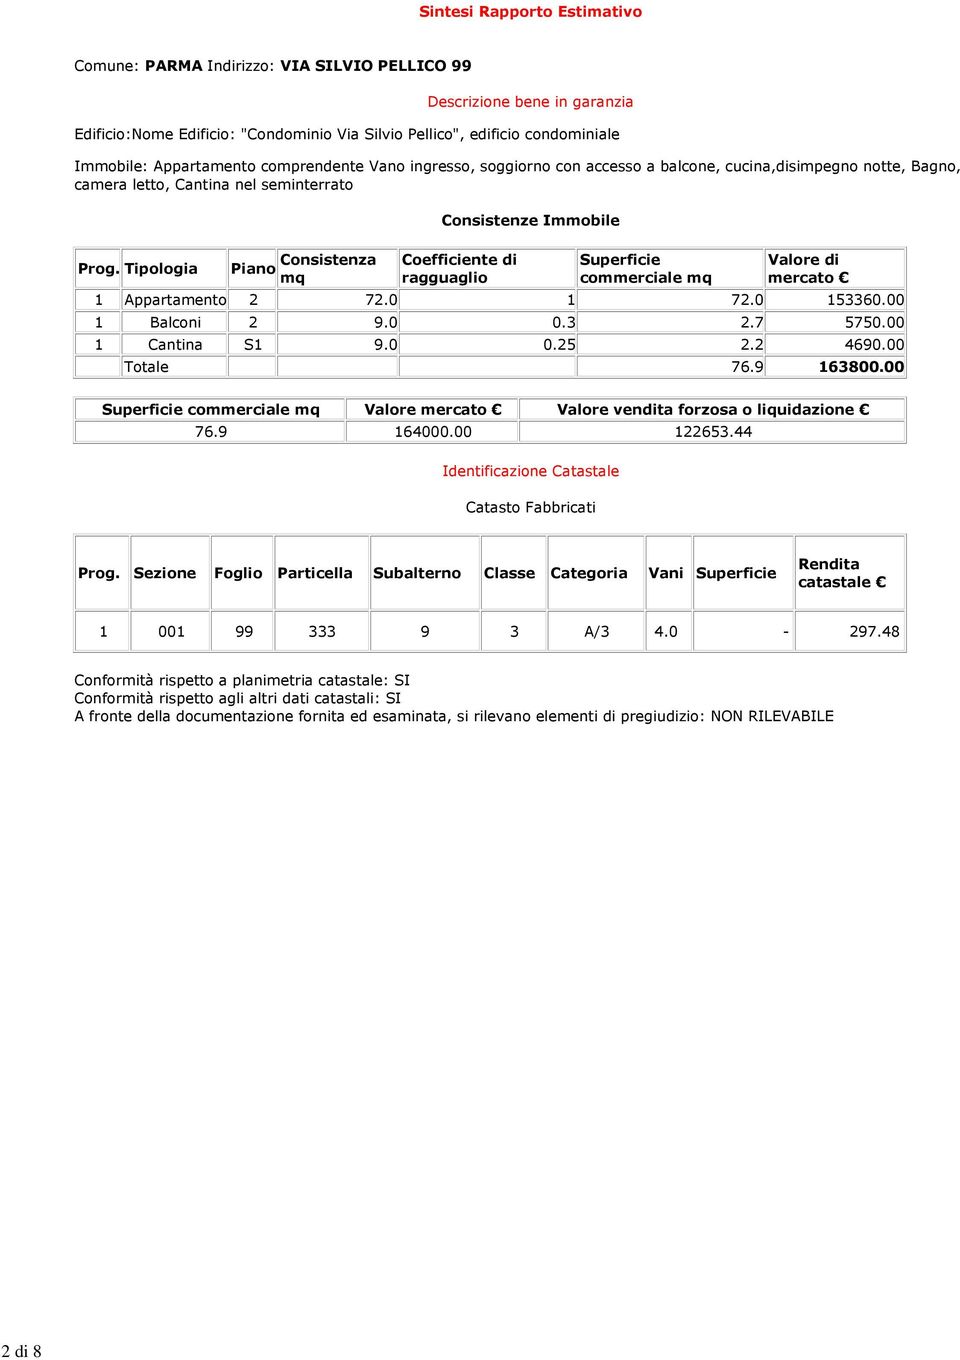 Tipologia Piano Consistenza mq Consistenze Immobile Coefficiente di ragguaglio Superficie commerciale mq Valore di mercato 1 Appartamento 2 72.0 1 72.0 153360.00 1 Balconi 2 9.0 0.3 2.7 5750.